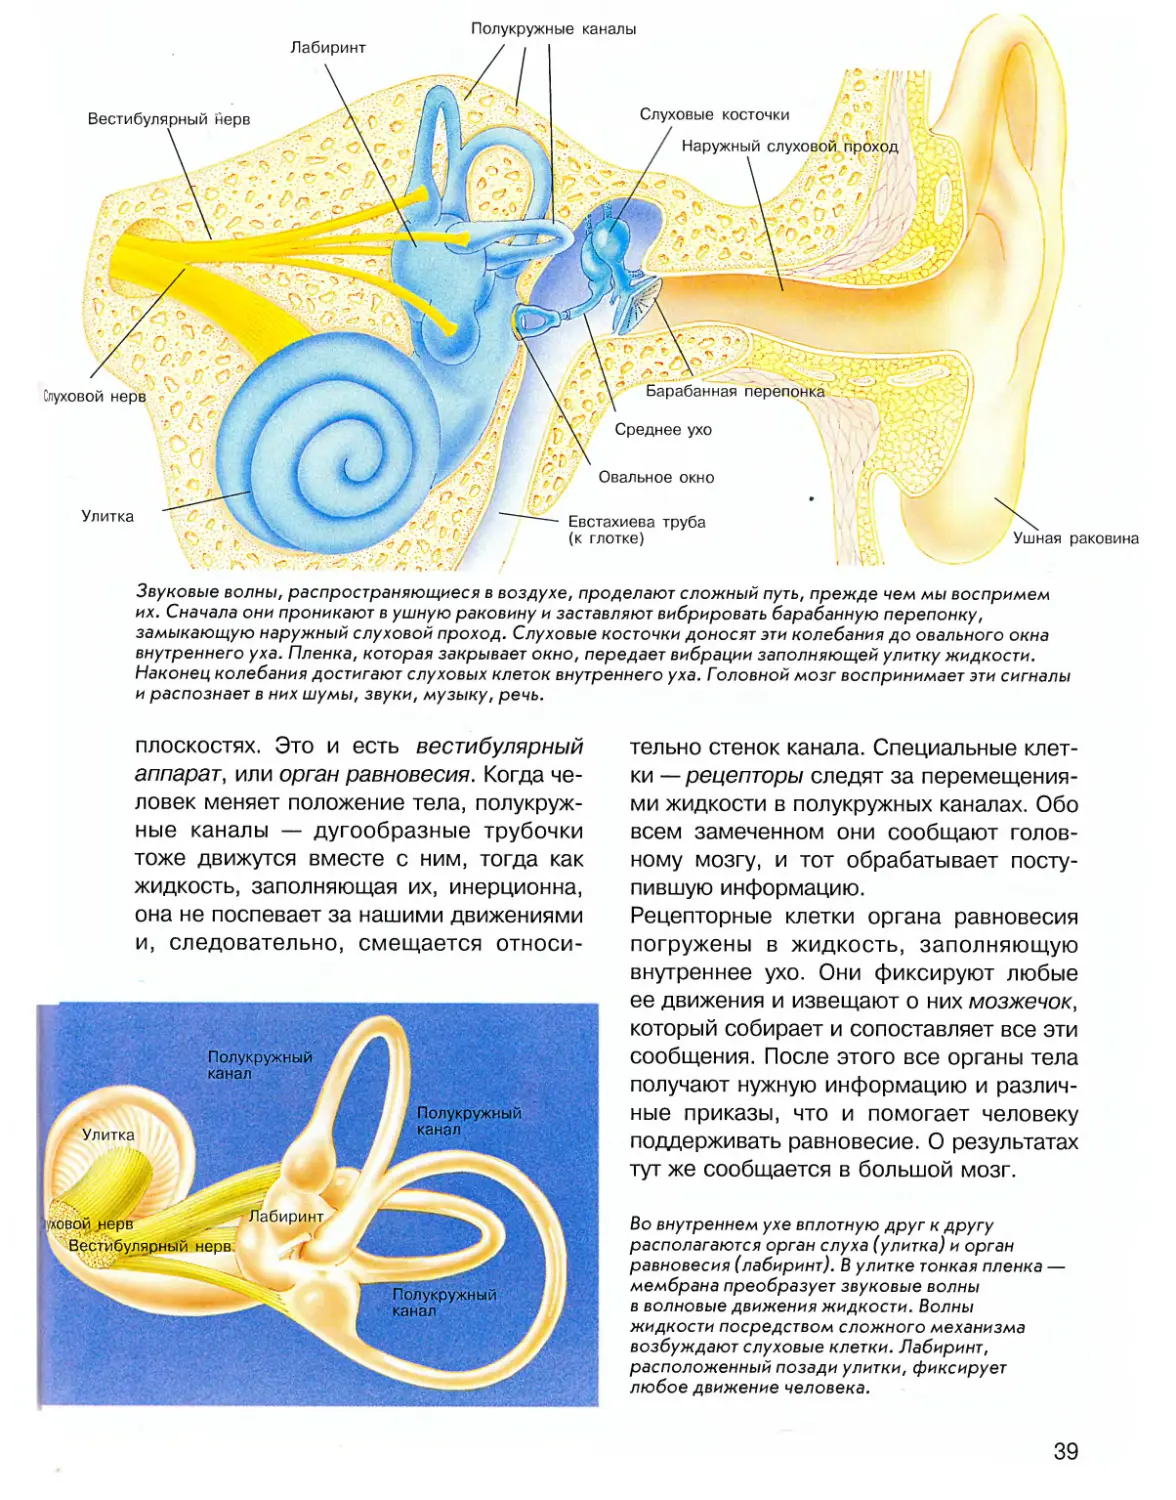 Внутреннее ухо является. Вестибулярный аппарат внутреннего уха. Полукружные каналы внутреннего уха. Внутреннее ухо вестибулярный аппарат. Строение полукружных каналов внутреннего уха.